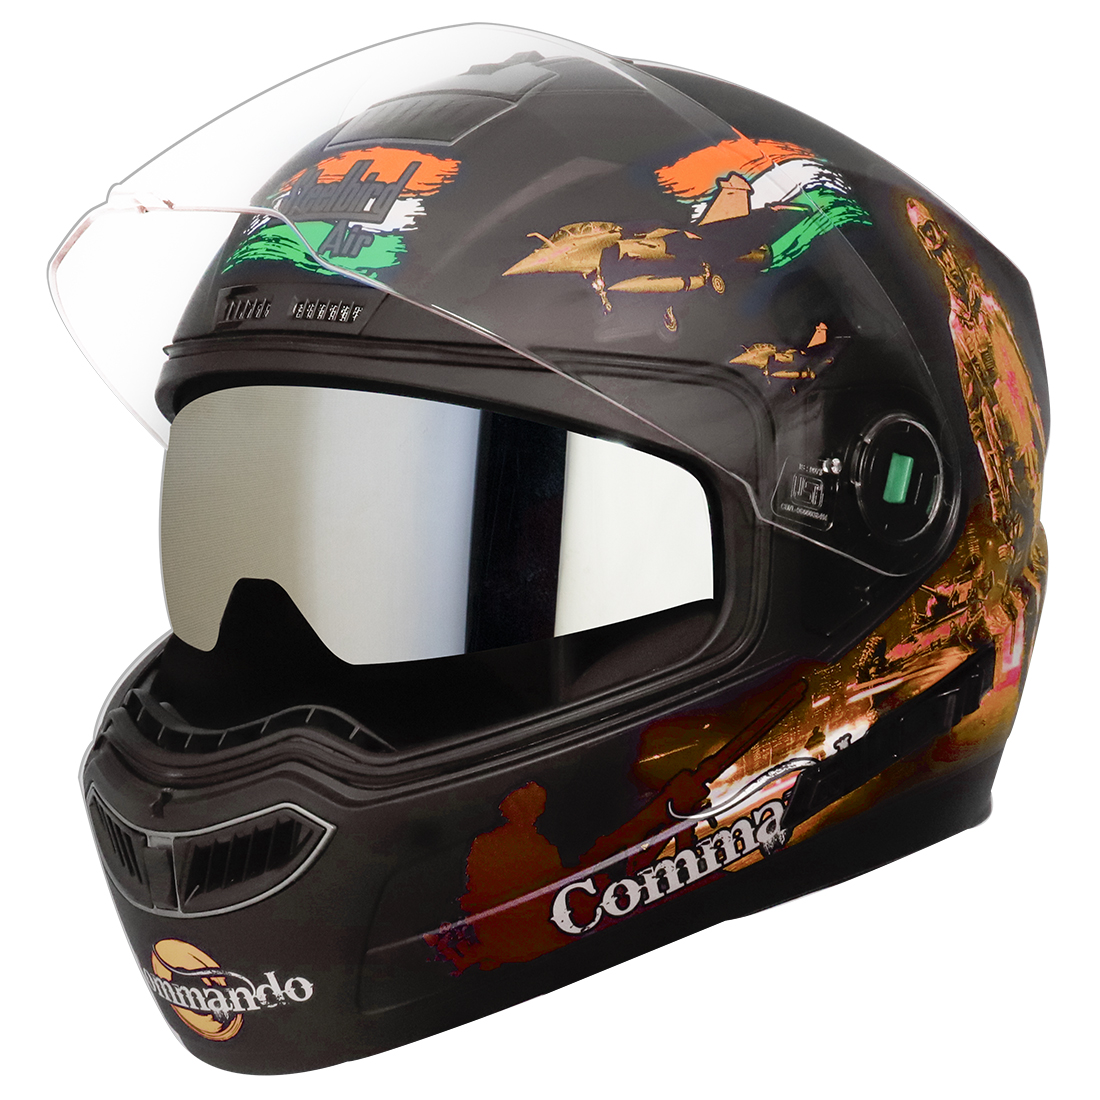 Steelbird SBA-1 Commando Double Visor Full Face Graphics Helmet, Inner Silver Sun Shield And Outer Clear Visor (Glossy Black Orange)